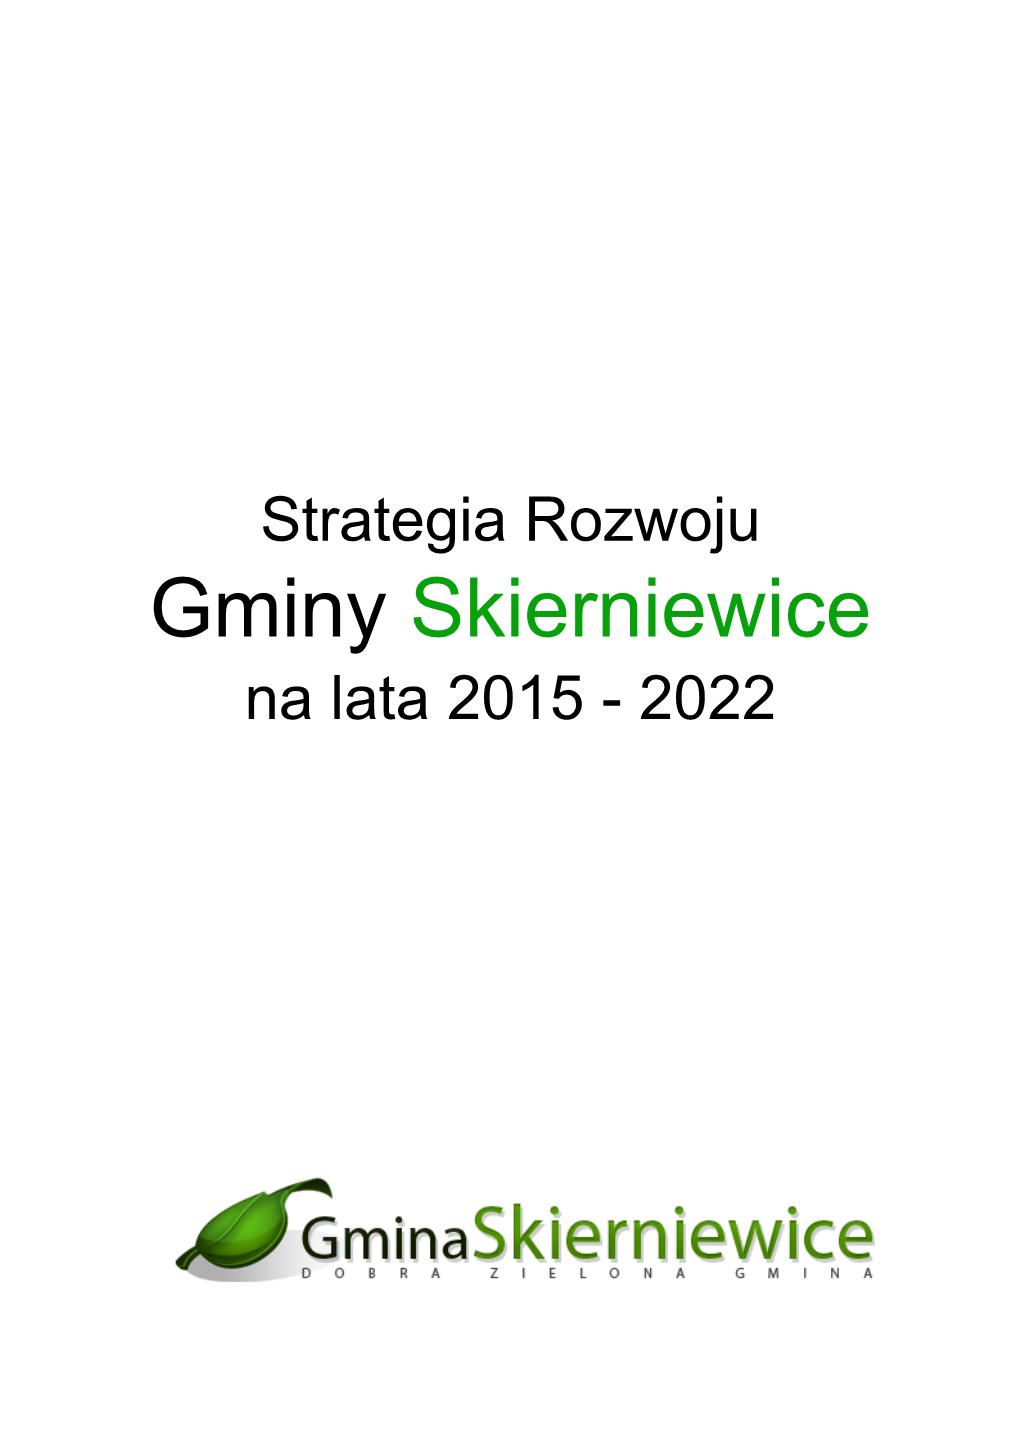 Strategia Rozwoju Gminy Skierniewice Na Lata 2015 - 2022